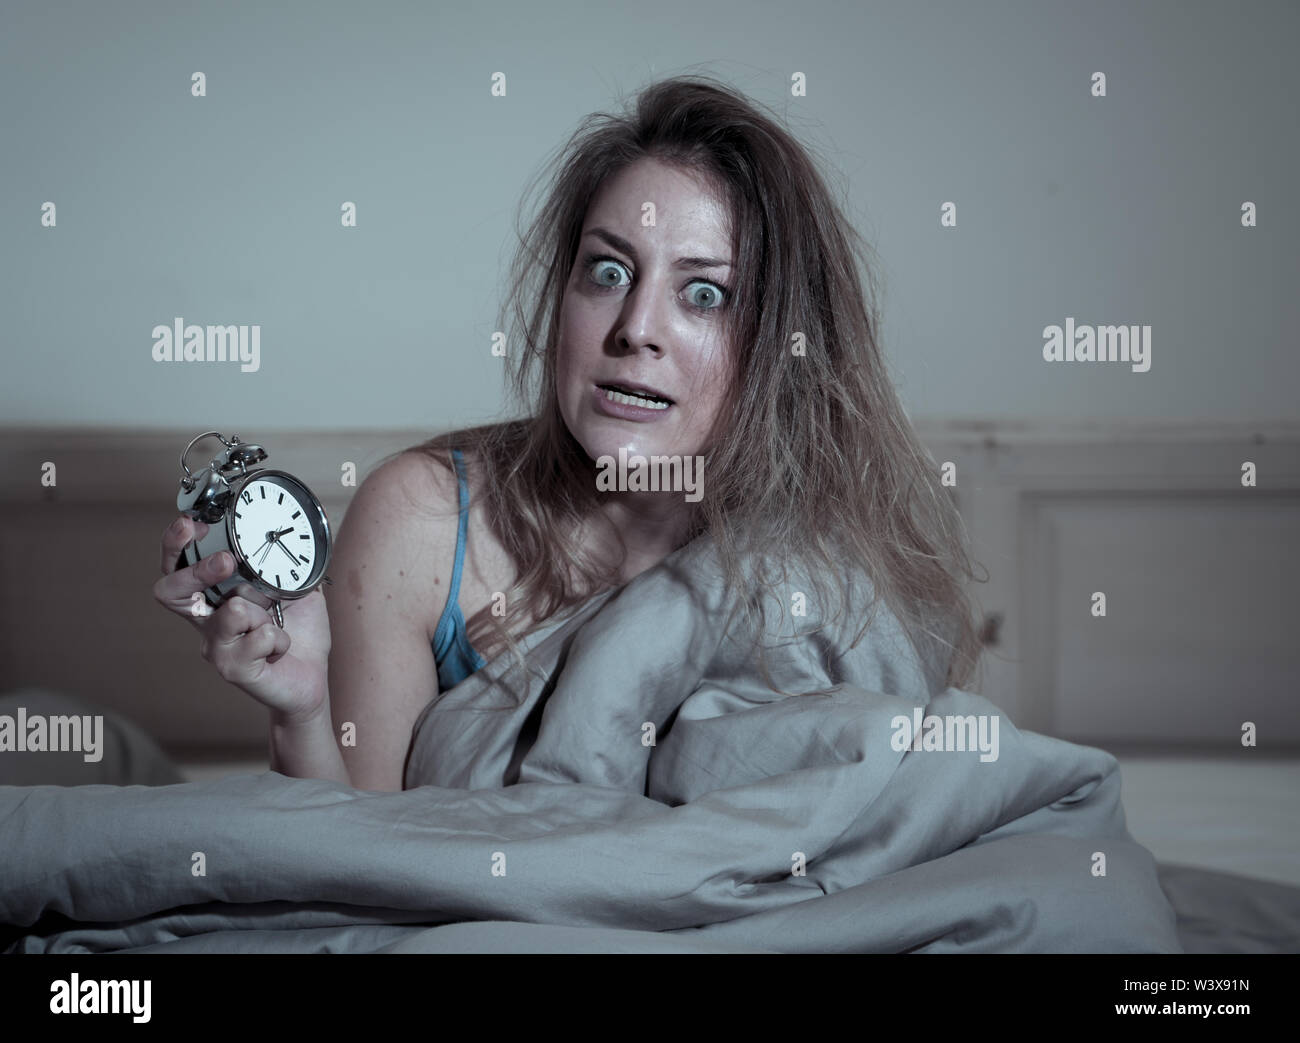 Schlaflose und verzweifelt schönen kaukasischen Frau wach nachts nicht schlafen zu können, Anzeigen, frustriert und beunruhigt insom Leiden. Stockfoto